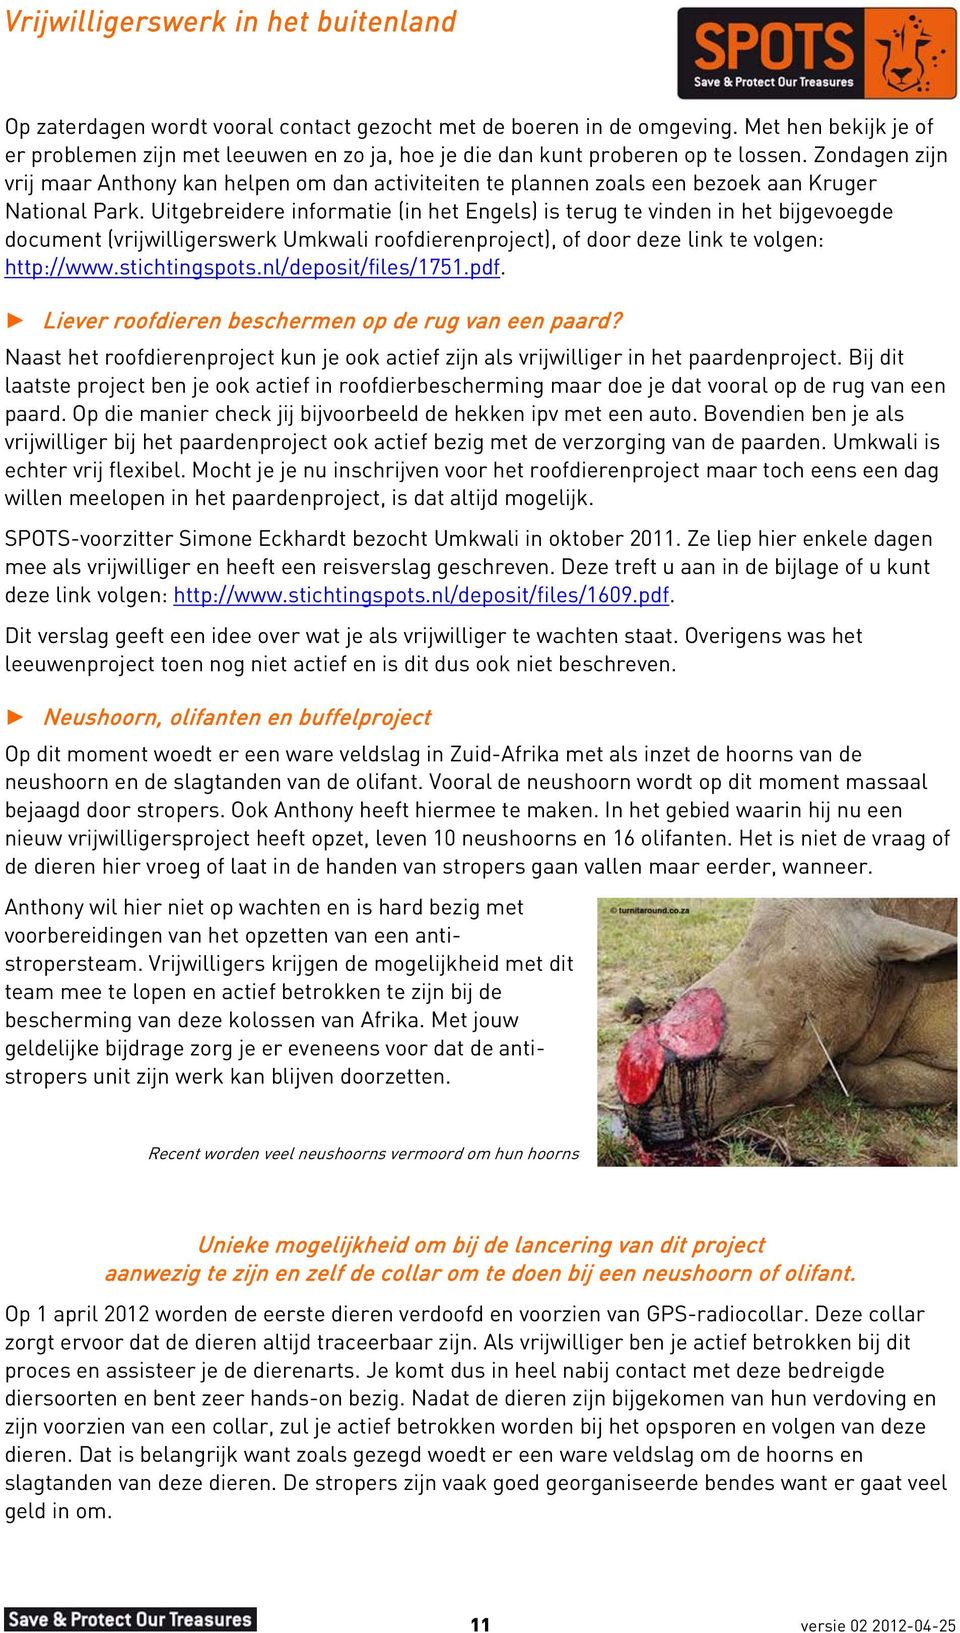 Uitgebreidere informatie (in het Engels) is terug te vinden in het bijgevoegde document (vrijwilligerswerk Umkwali roofdierenproject), of door deze link te volgen: http://www.stichtingspots.